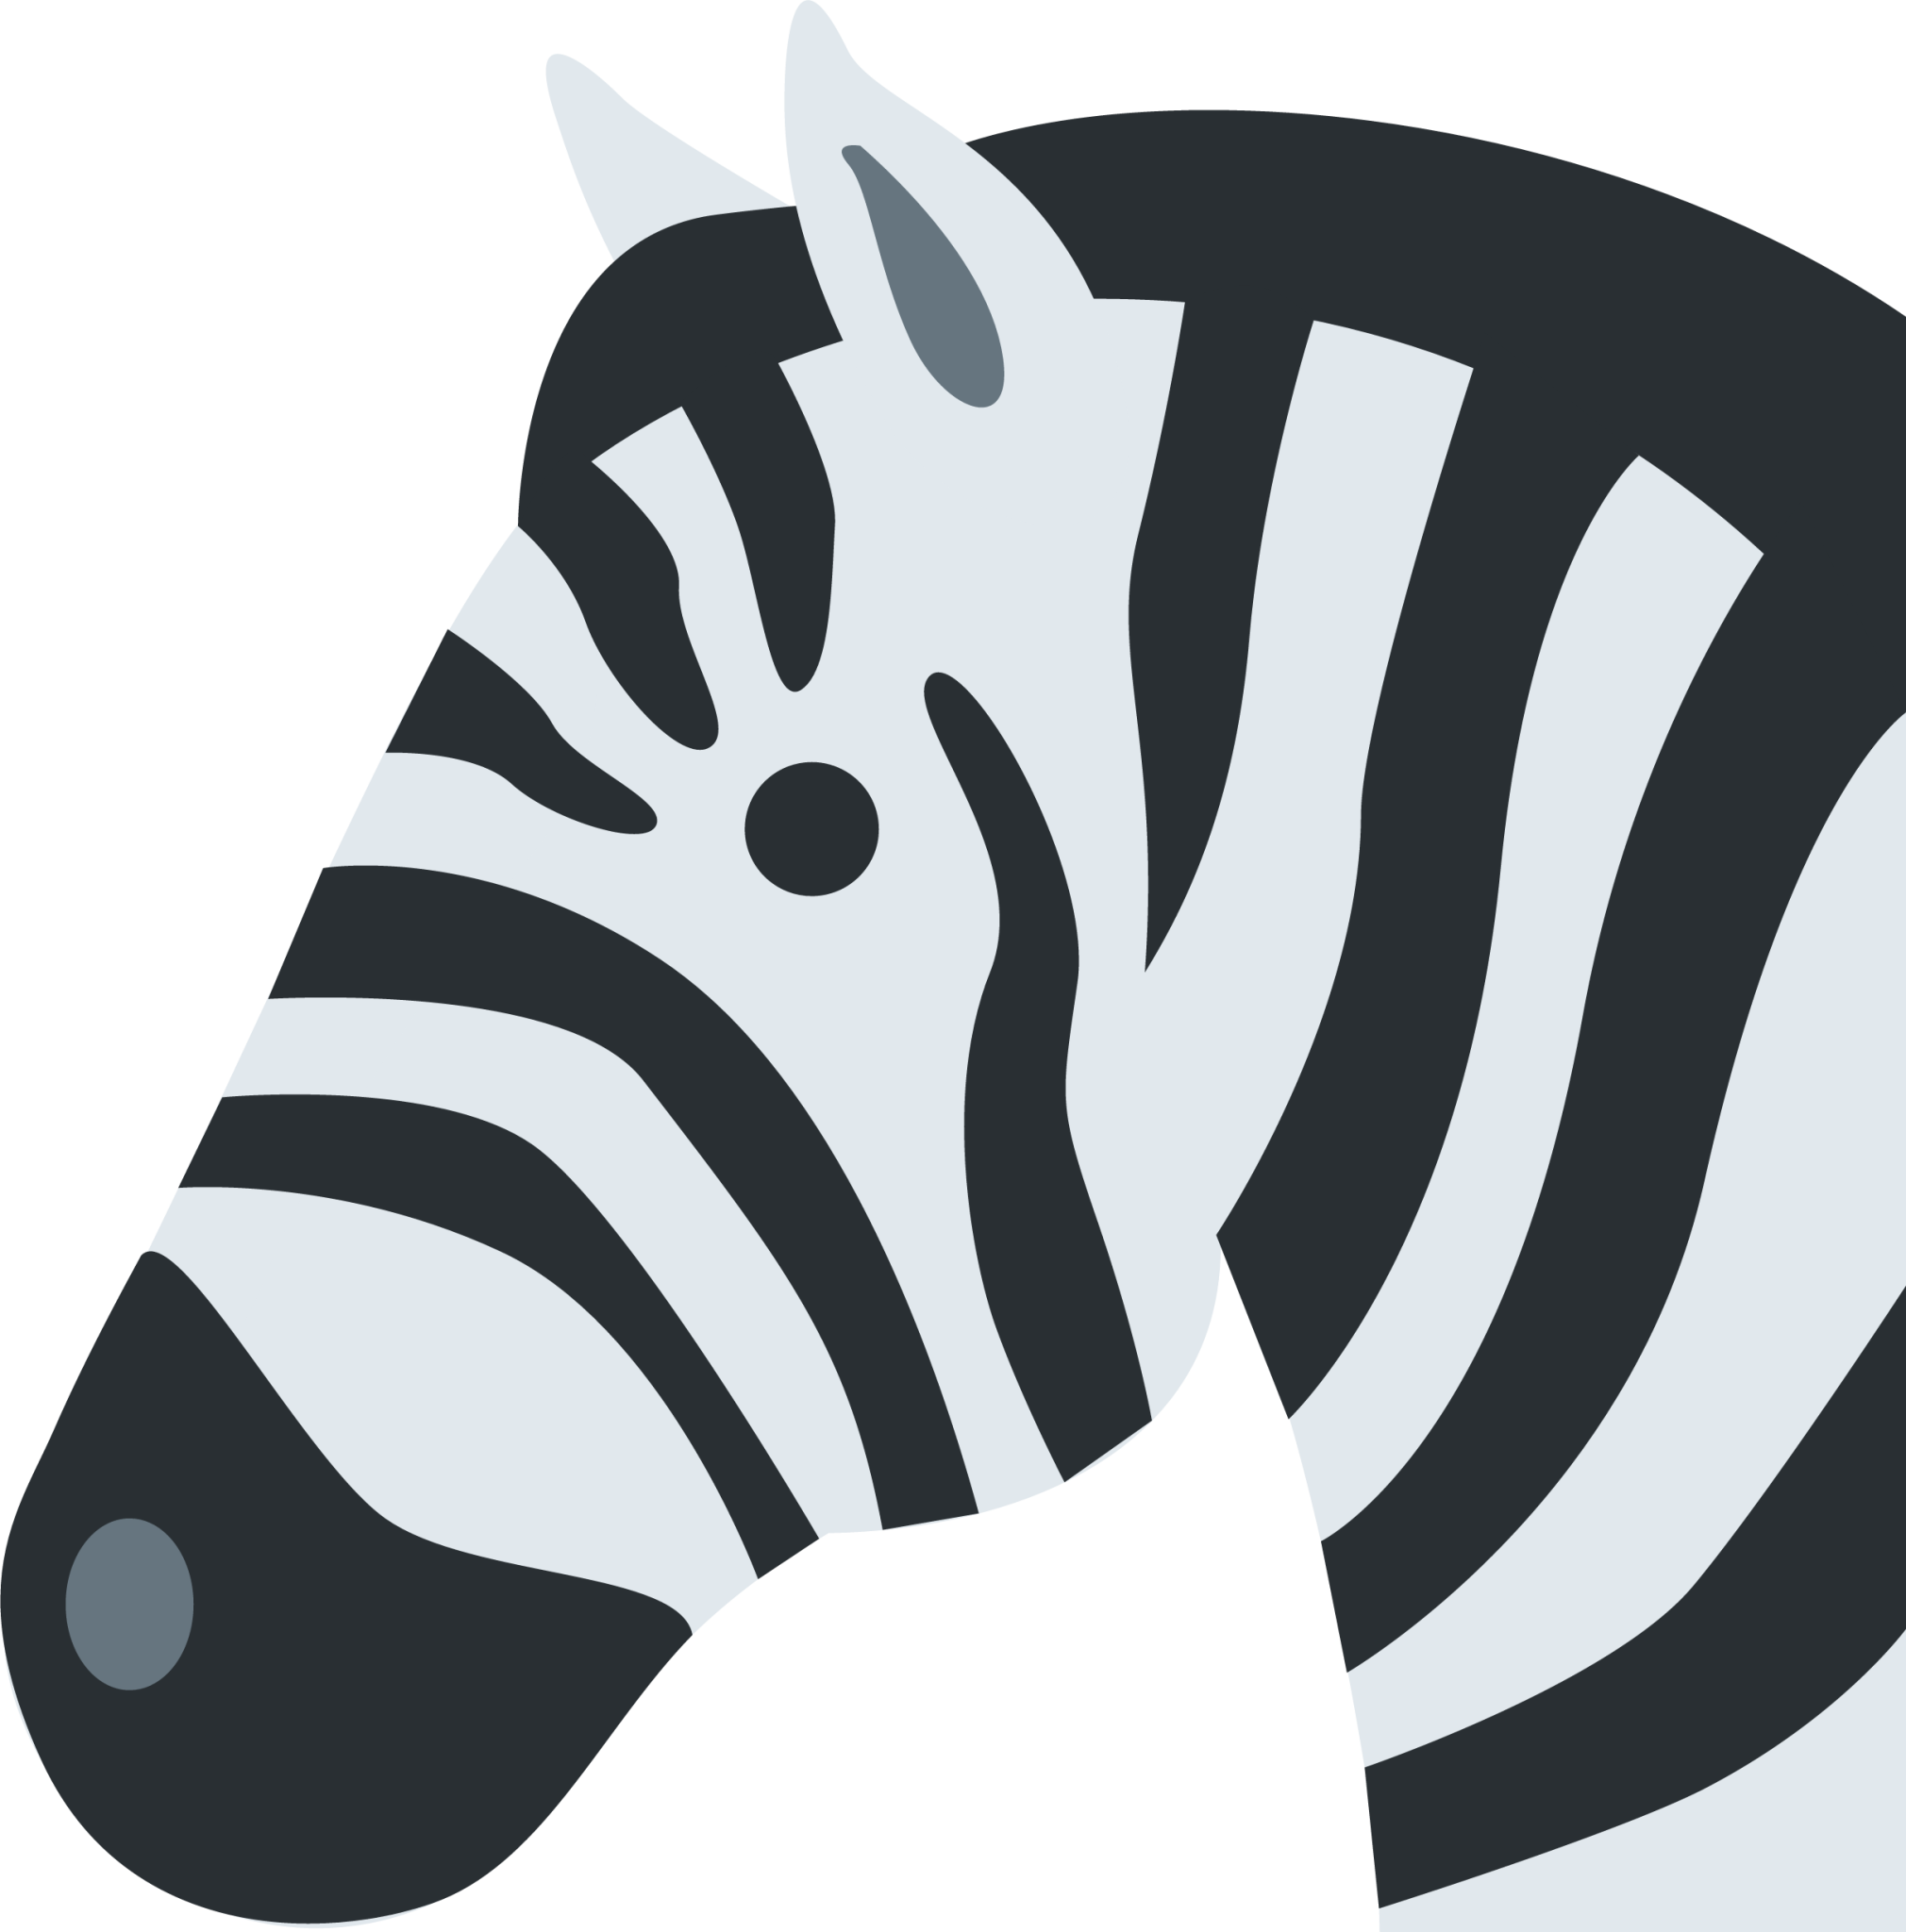 zebra emoji